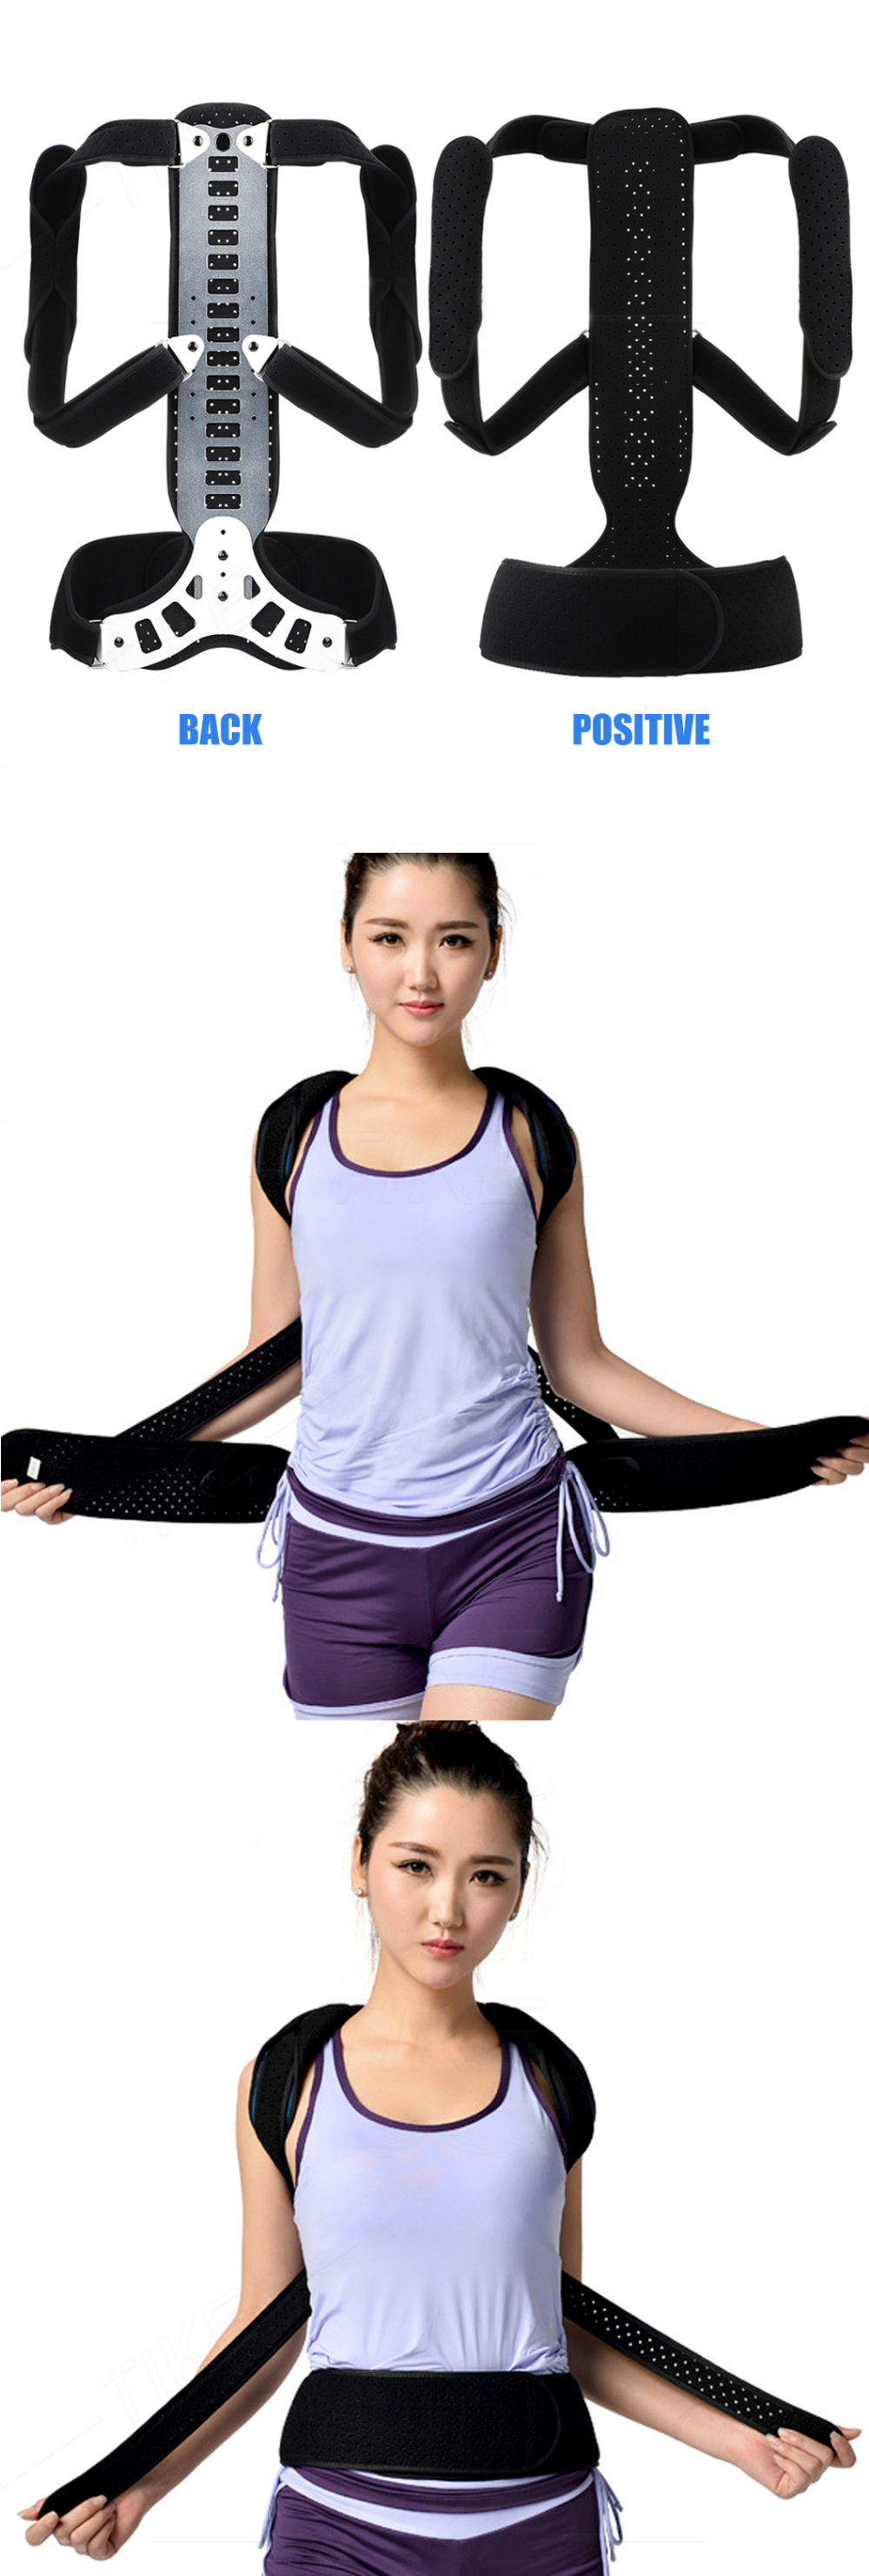 OBER-Metal-Adjustable-Back-Shoulder-Posture-Corrector-Brace-Spine-Support-Hunching-Back-Trainer-Pain-1927844-5